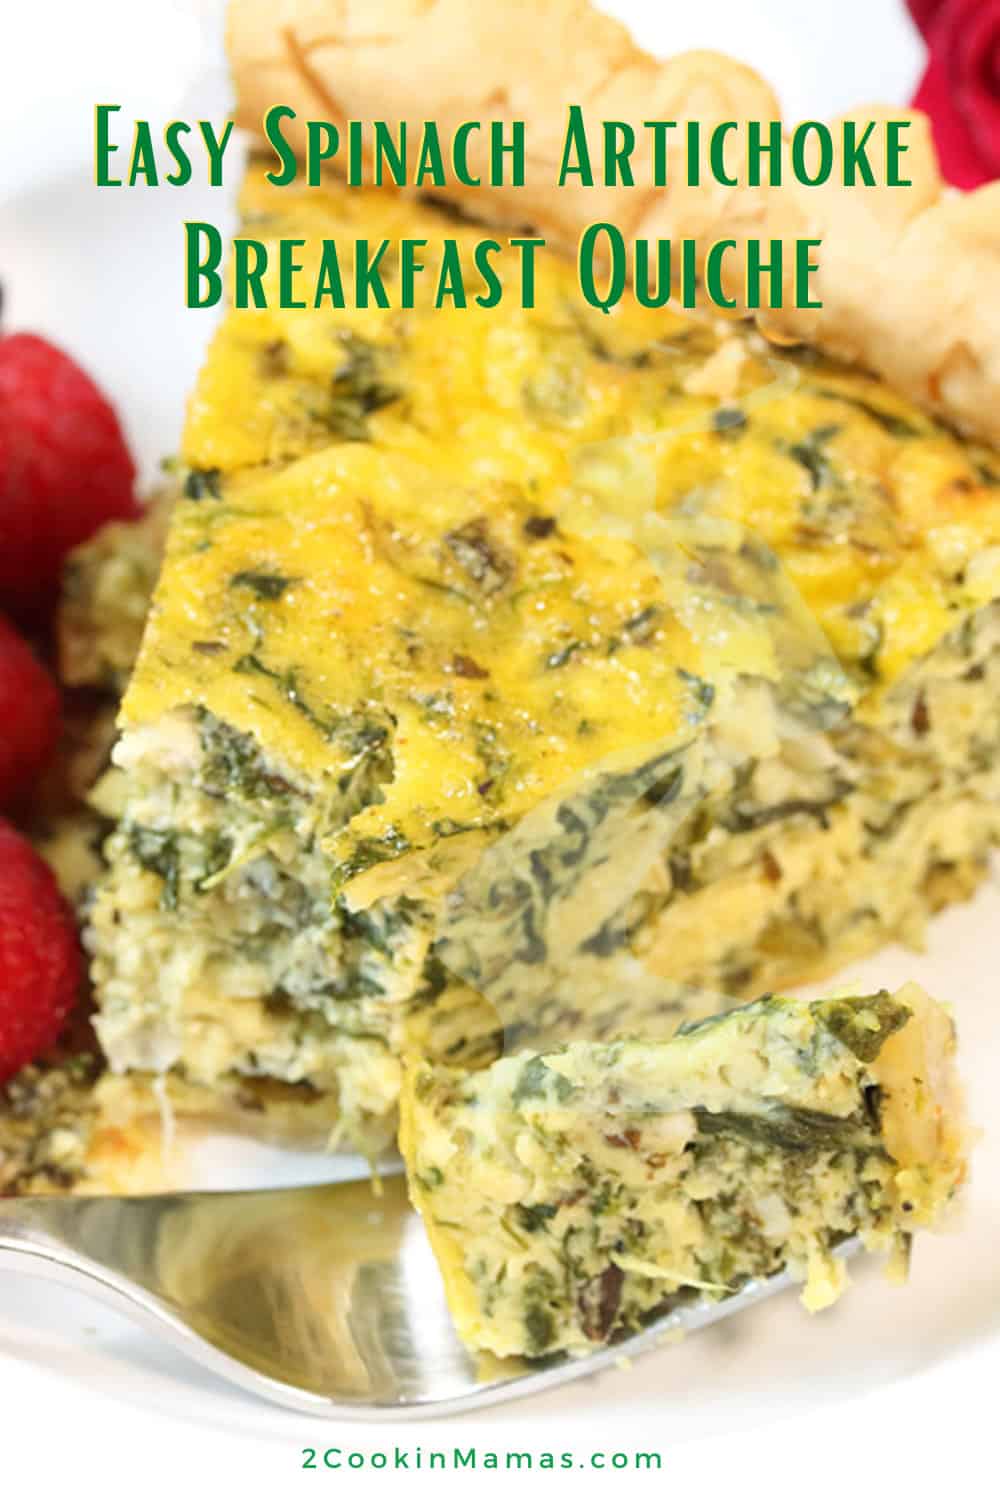 Spinach Artichoke Breakfast Quiche